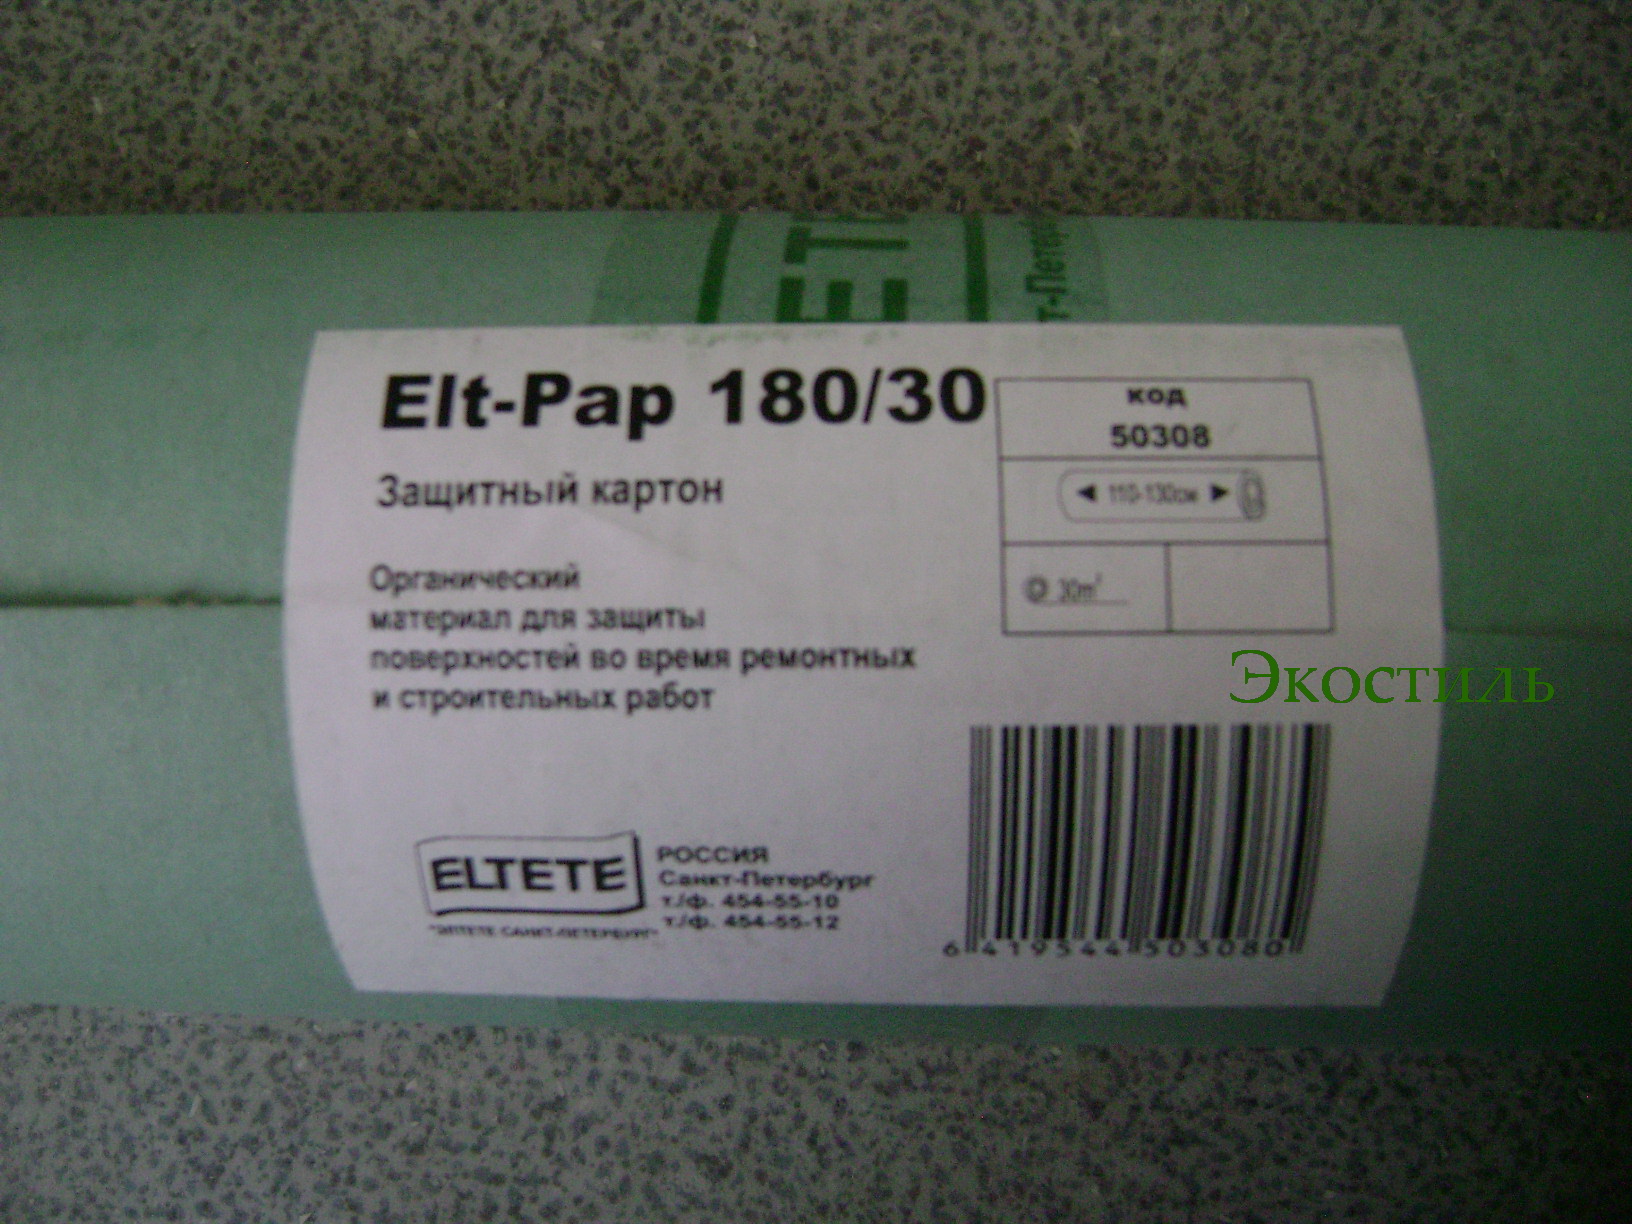  Крaфт бумага Elt-Pap 180/30